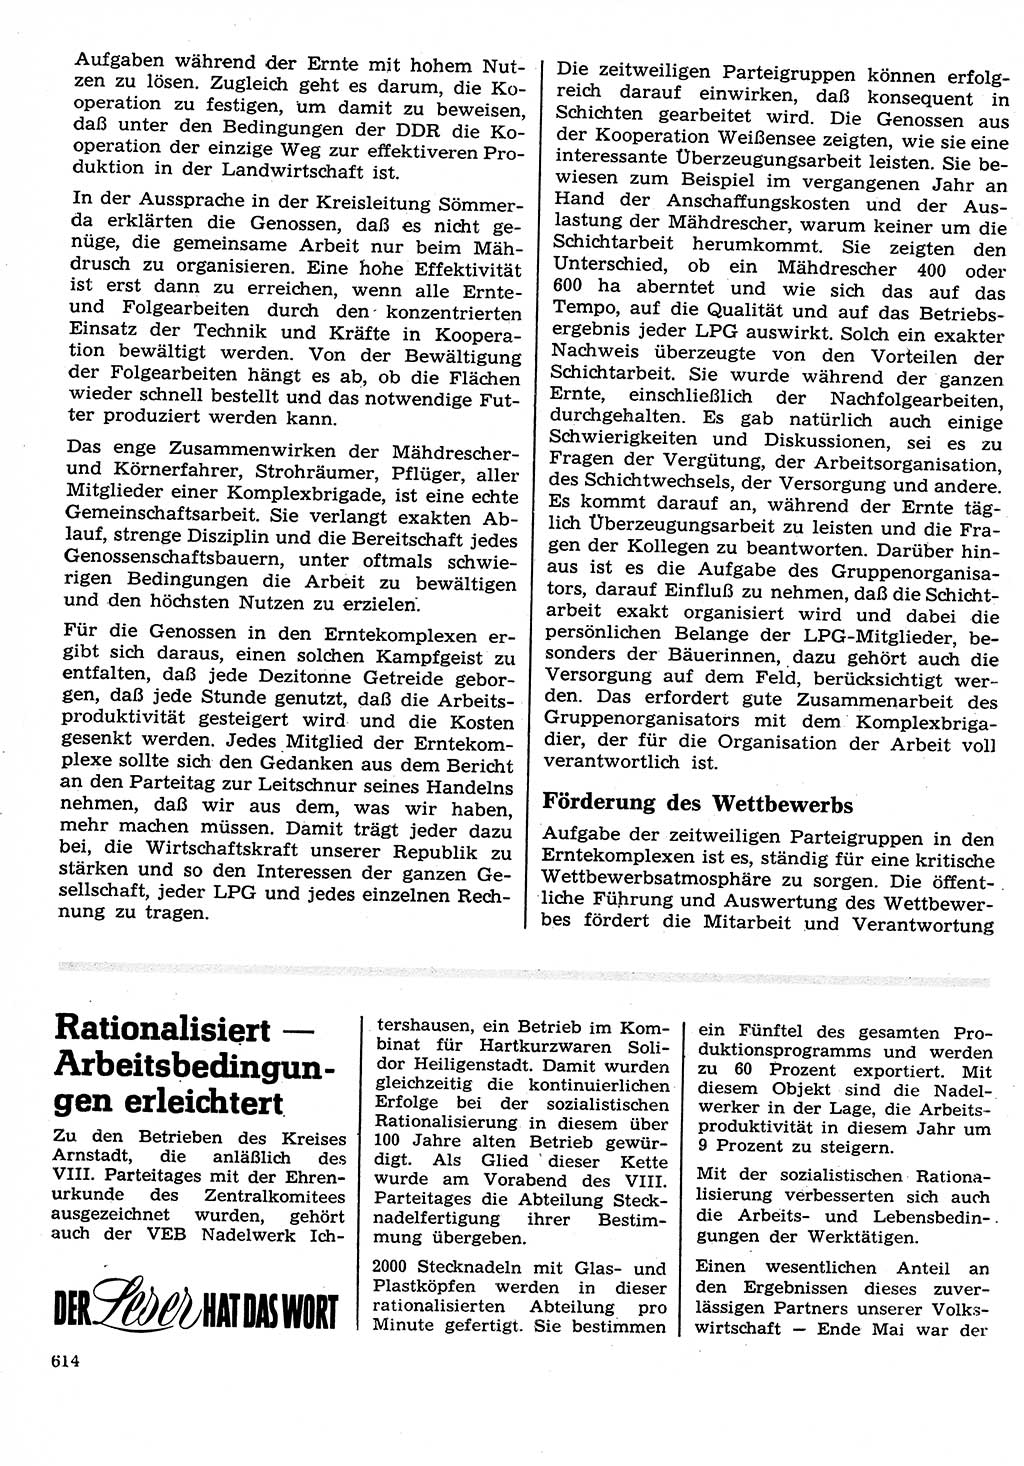 Neuer Weg (NW), Organ des Zentralkomitees (ZK) der SED (Sozialistische Einheitspartei Deutschlands) für Fragen des Parteilebens, 26. Jahrgang [Deutsche Demokratische Republik (DDR)] 1971, Seite 614 (NW ZK SED DDR 1971, S. 614)